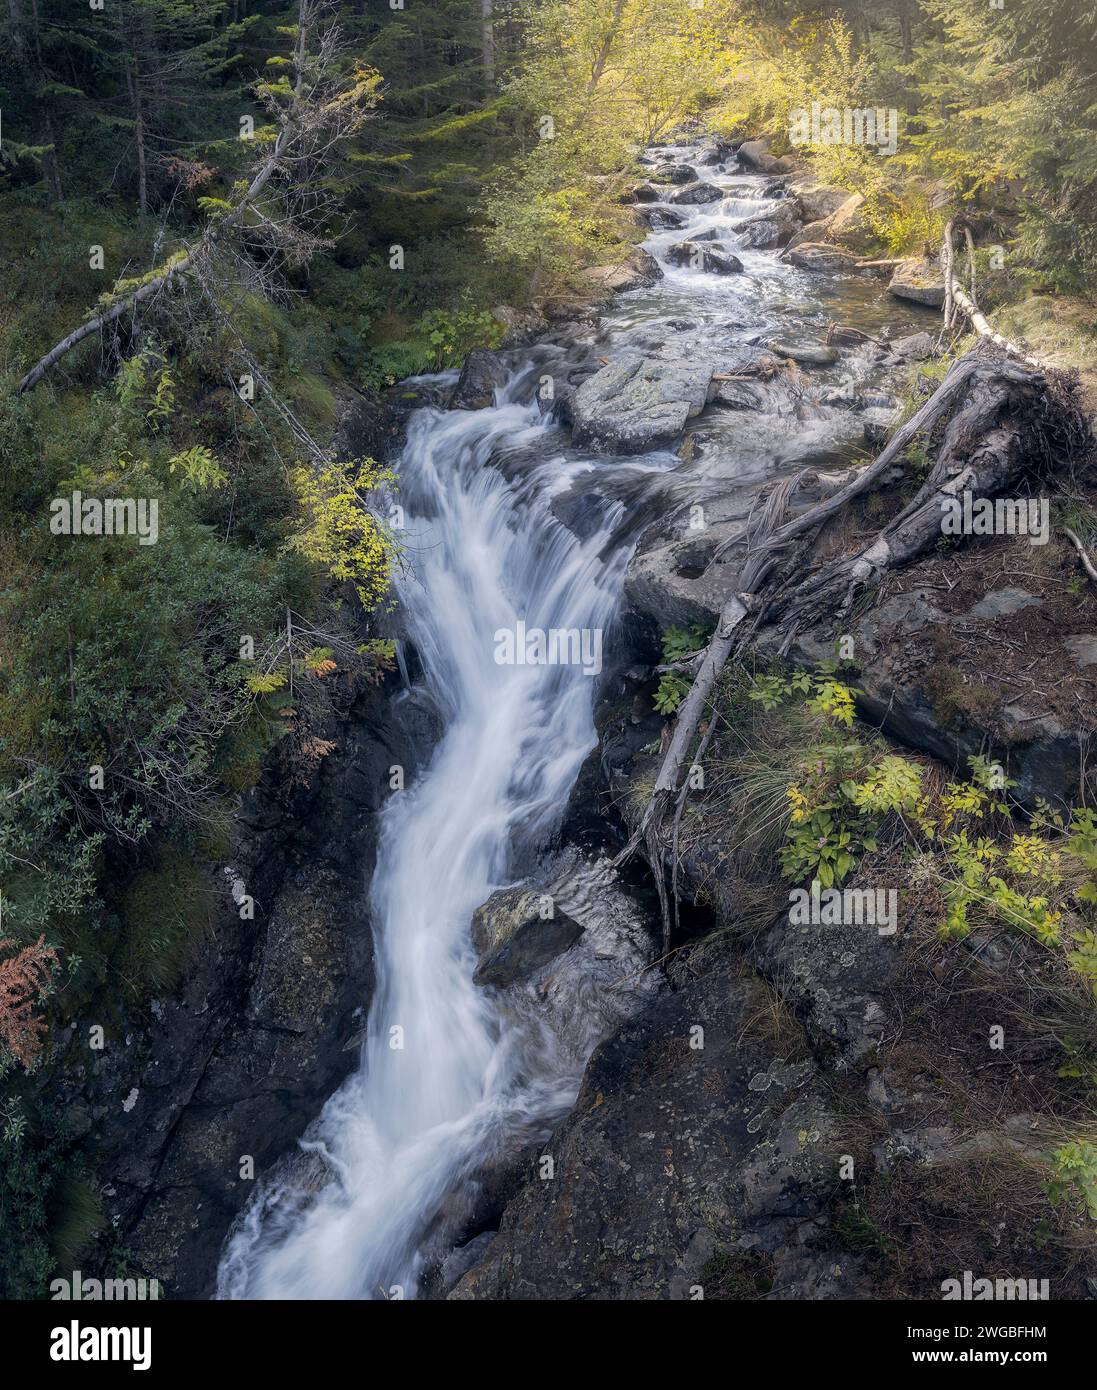 Waterfall at Comapedrosa Natural Park, The Pyrenees, Andorra Stock Photo